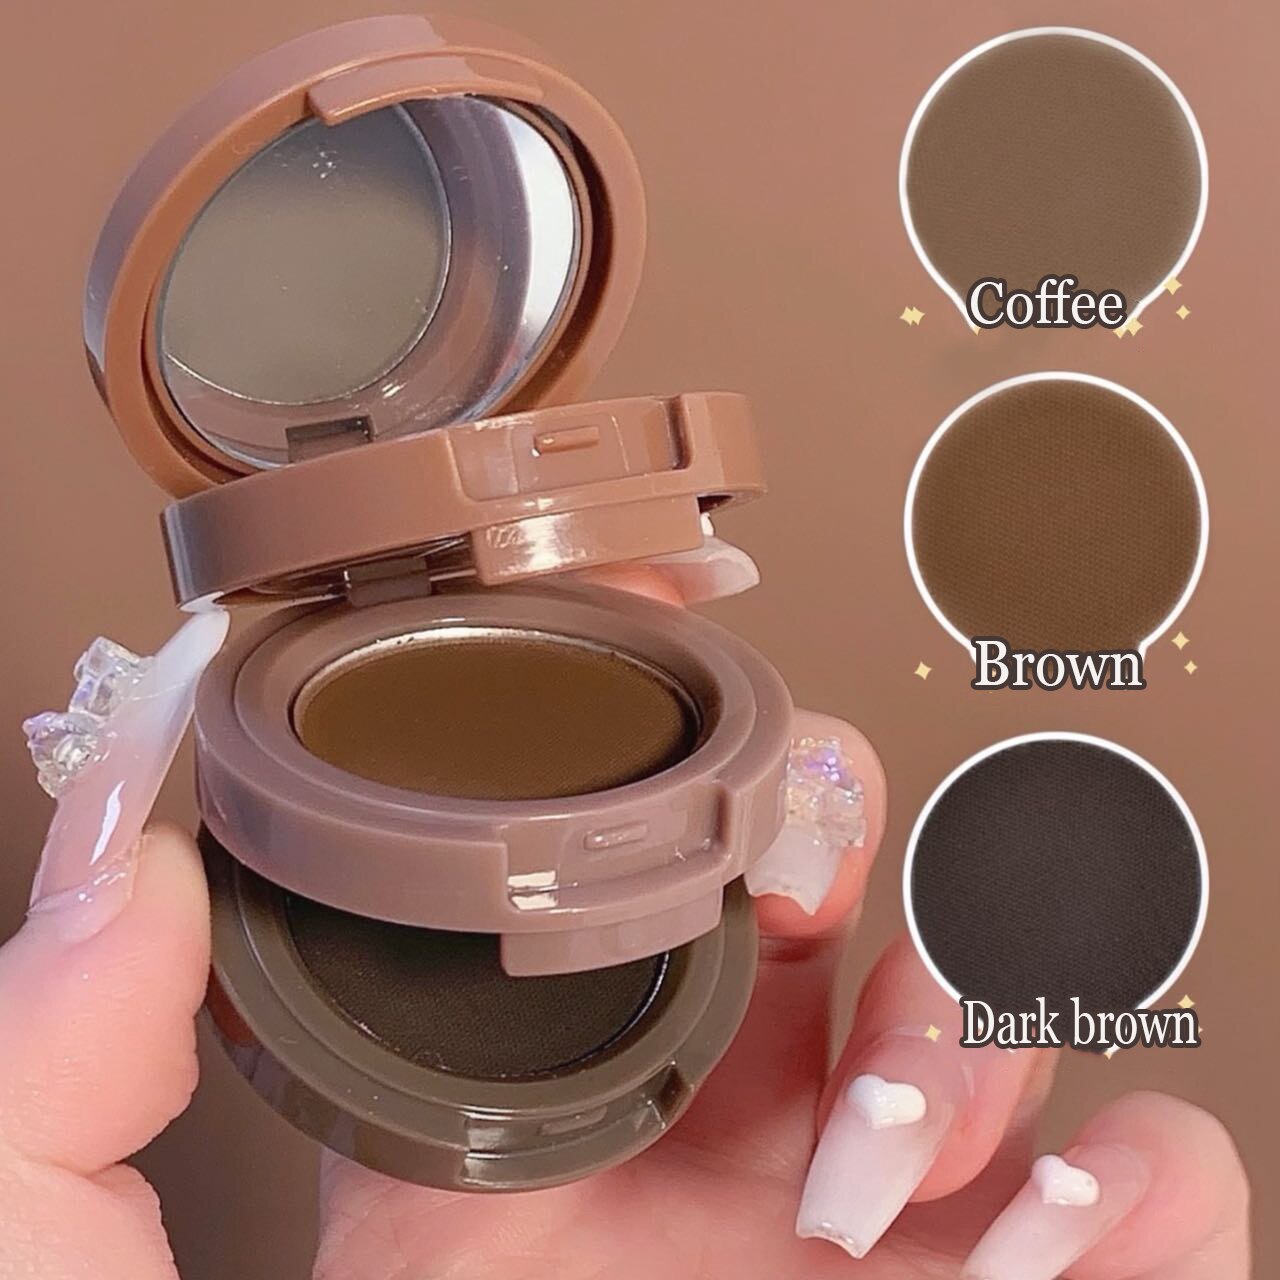 Paleta de sombras de ojo – Paleta de maquillaje 3 en 1 como resaltador y colorete para cejas y contorno de pelo o raíz, con polvos en mate y brillo